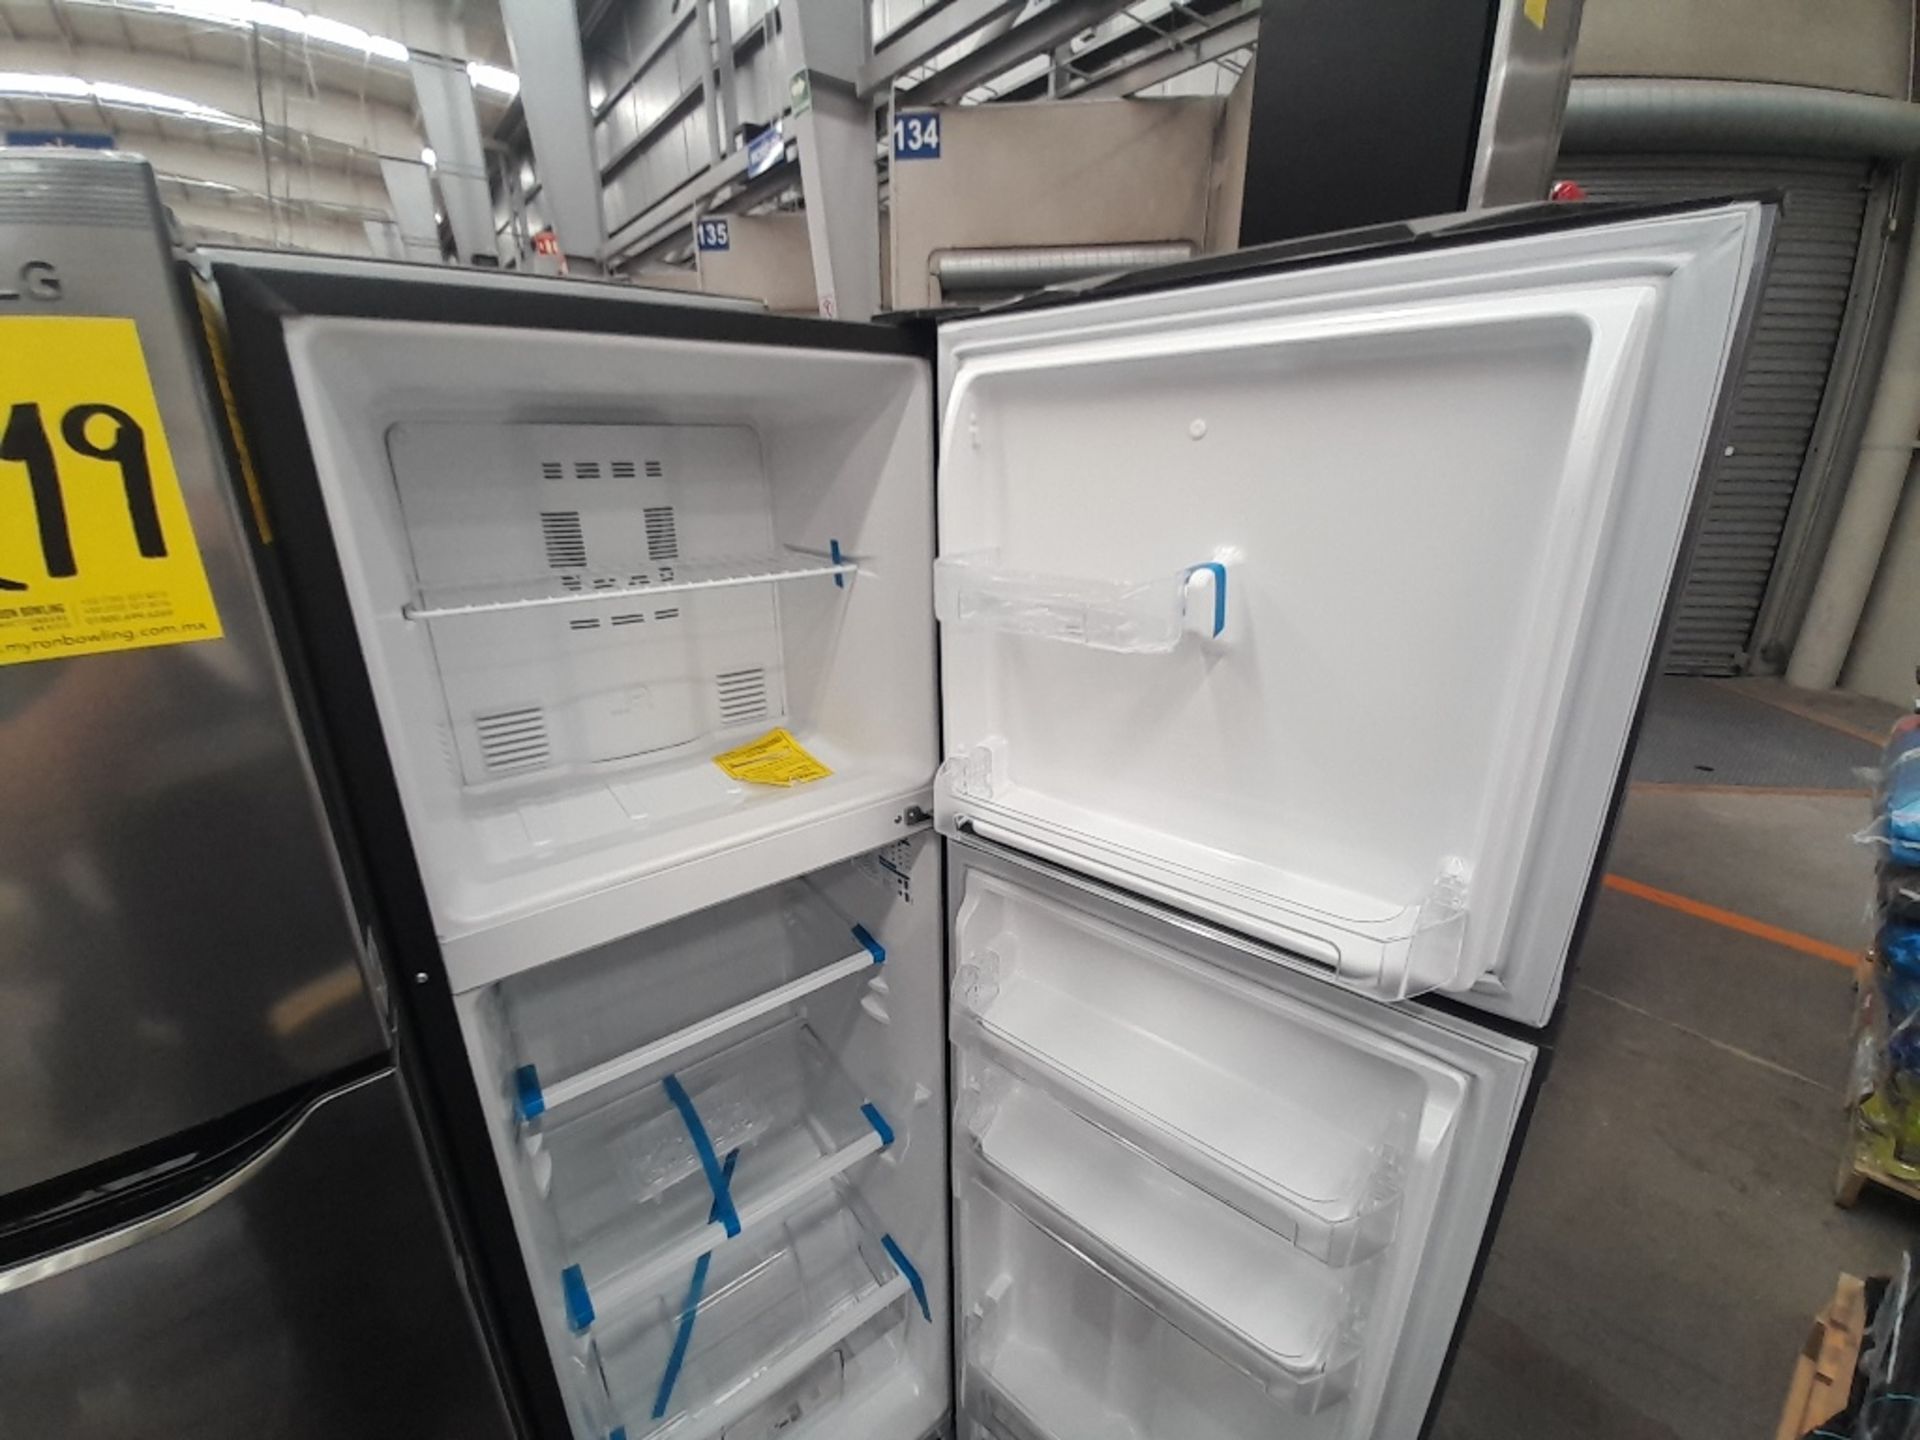 Lote de 2 refrigeradores contiene: 1 refrigerador Marca MABE, Modelo RMA250PVMR, Serie 610425, Colo - Image 4 of 8